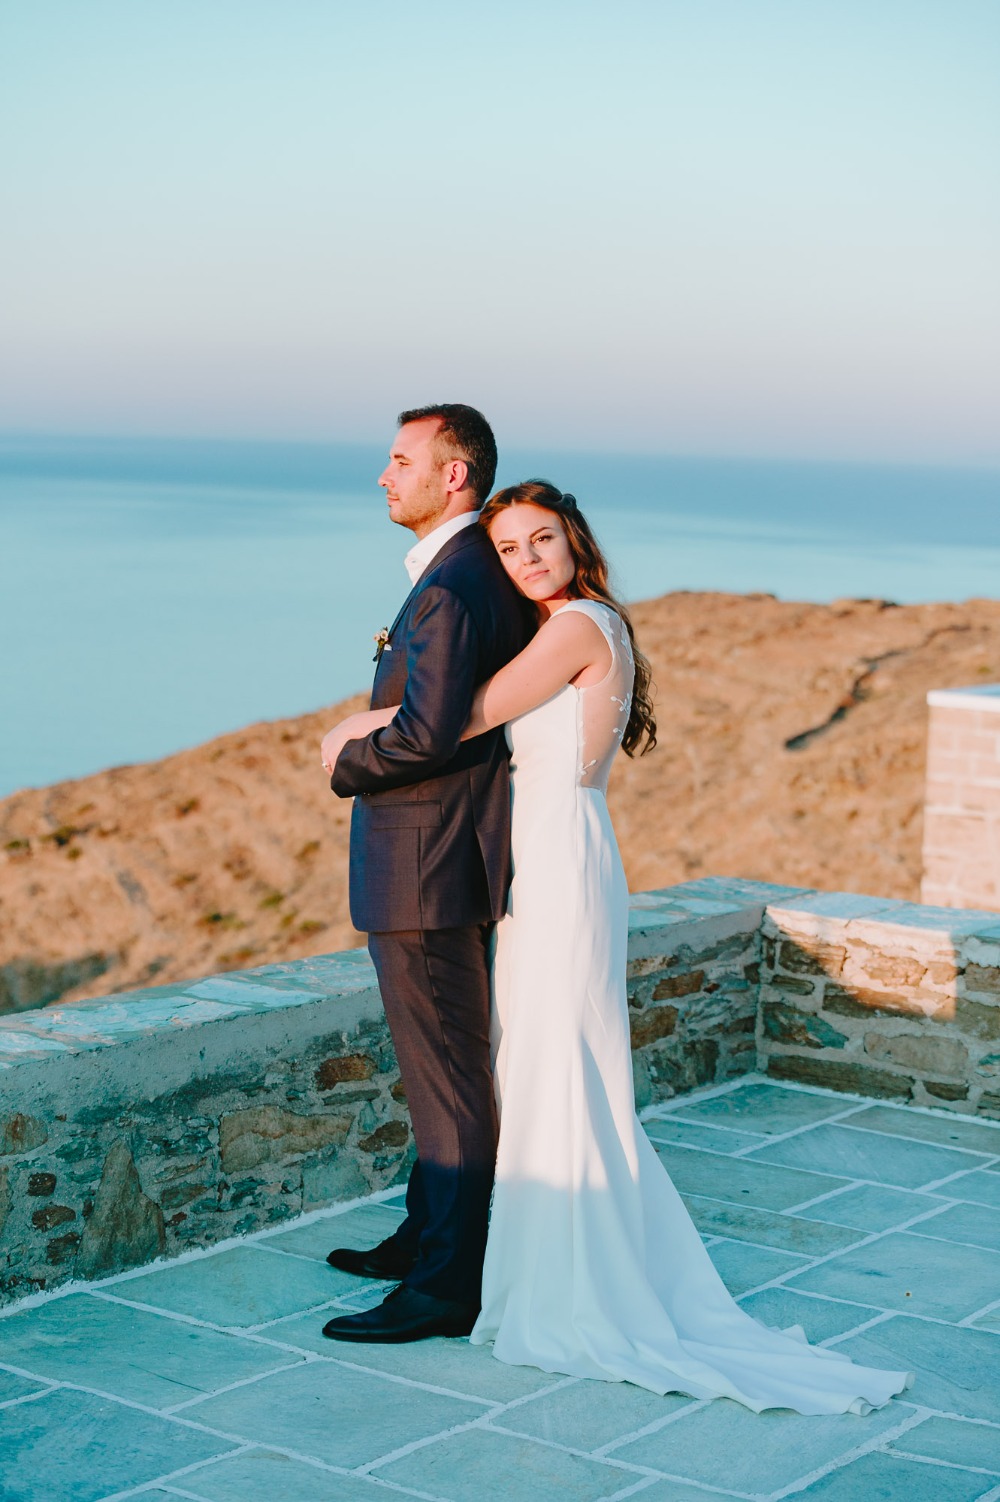 Gorgeous modern wedding in Cyclades